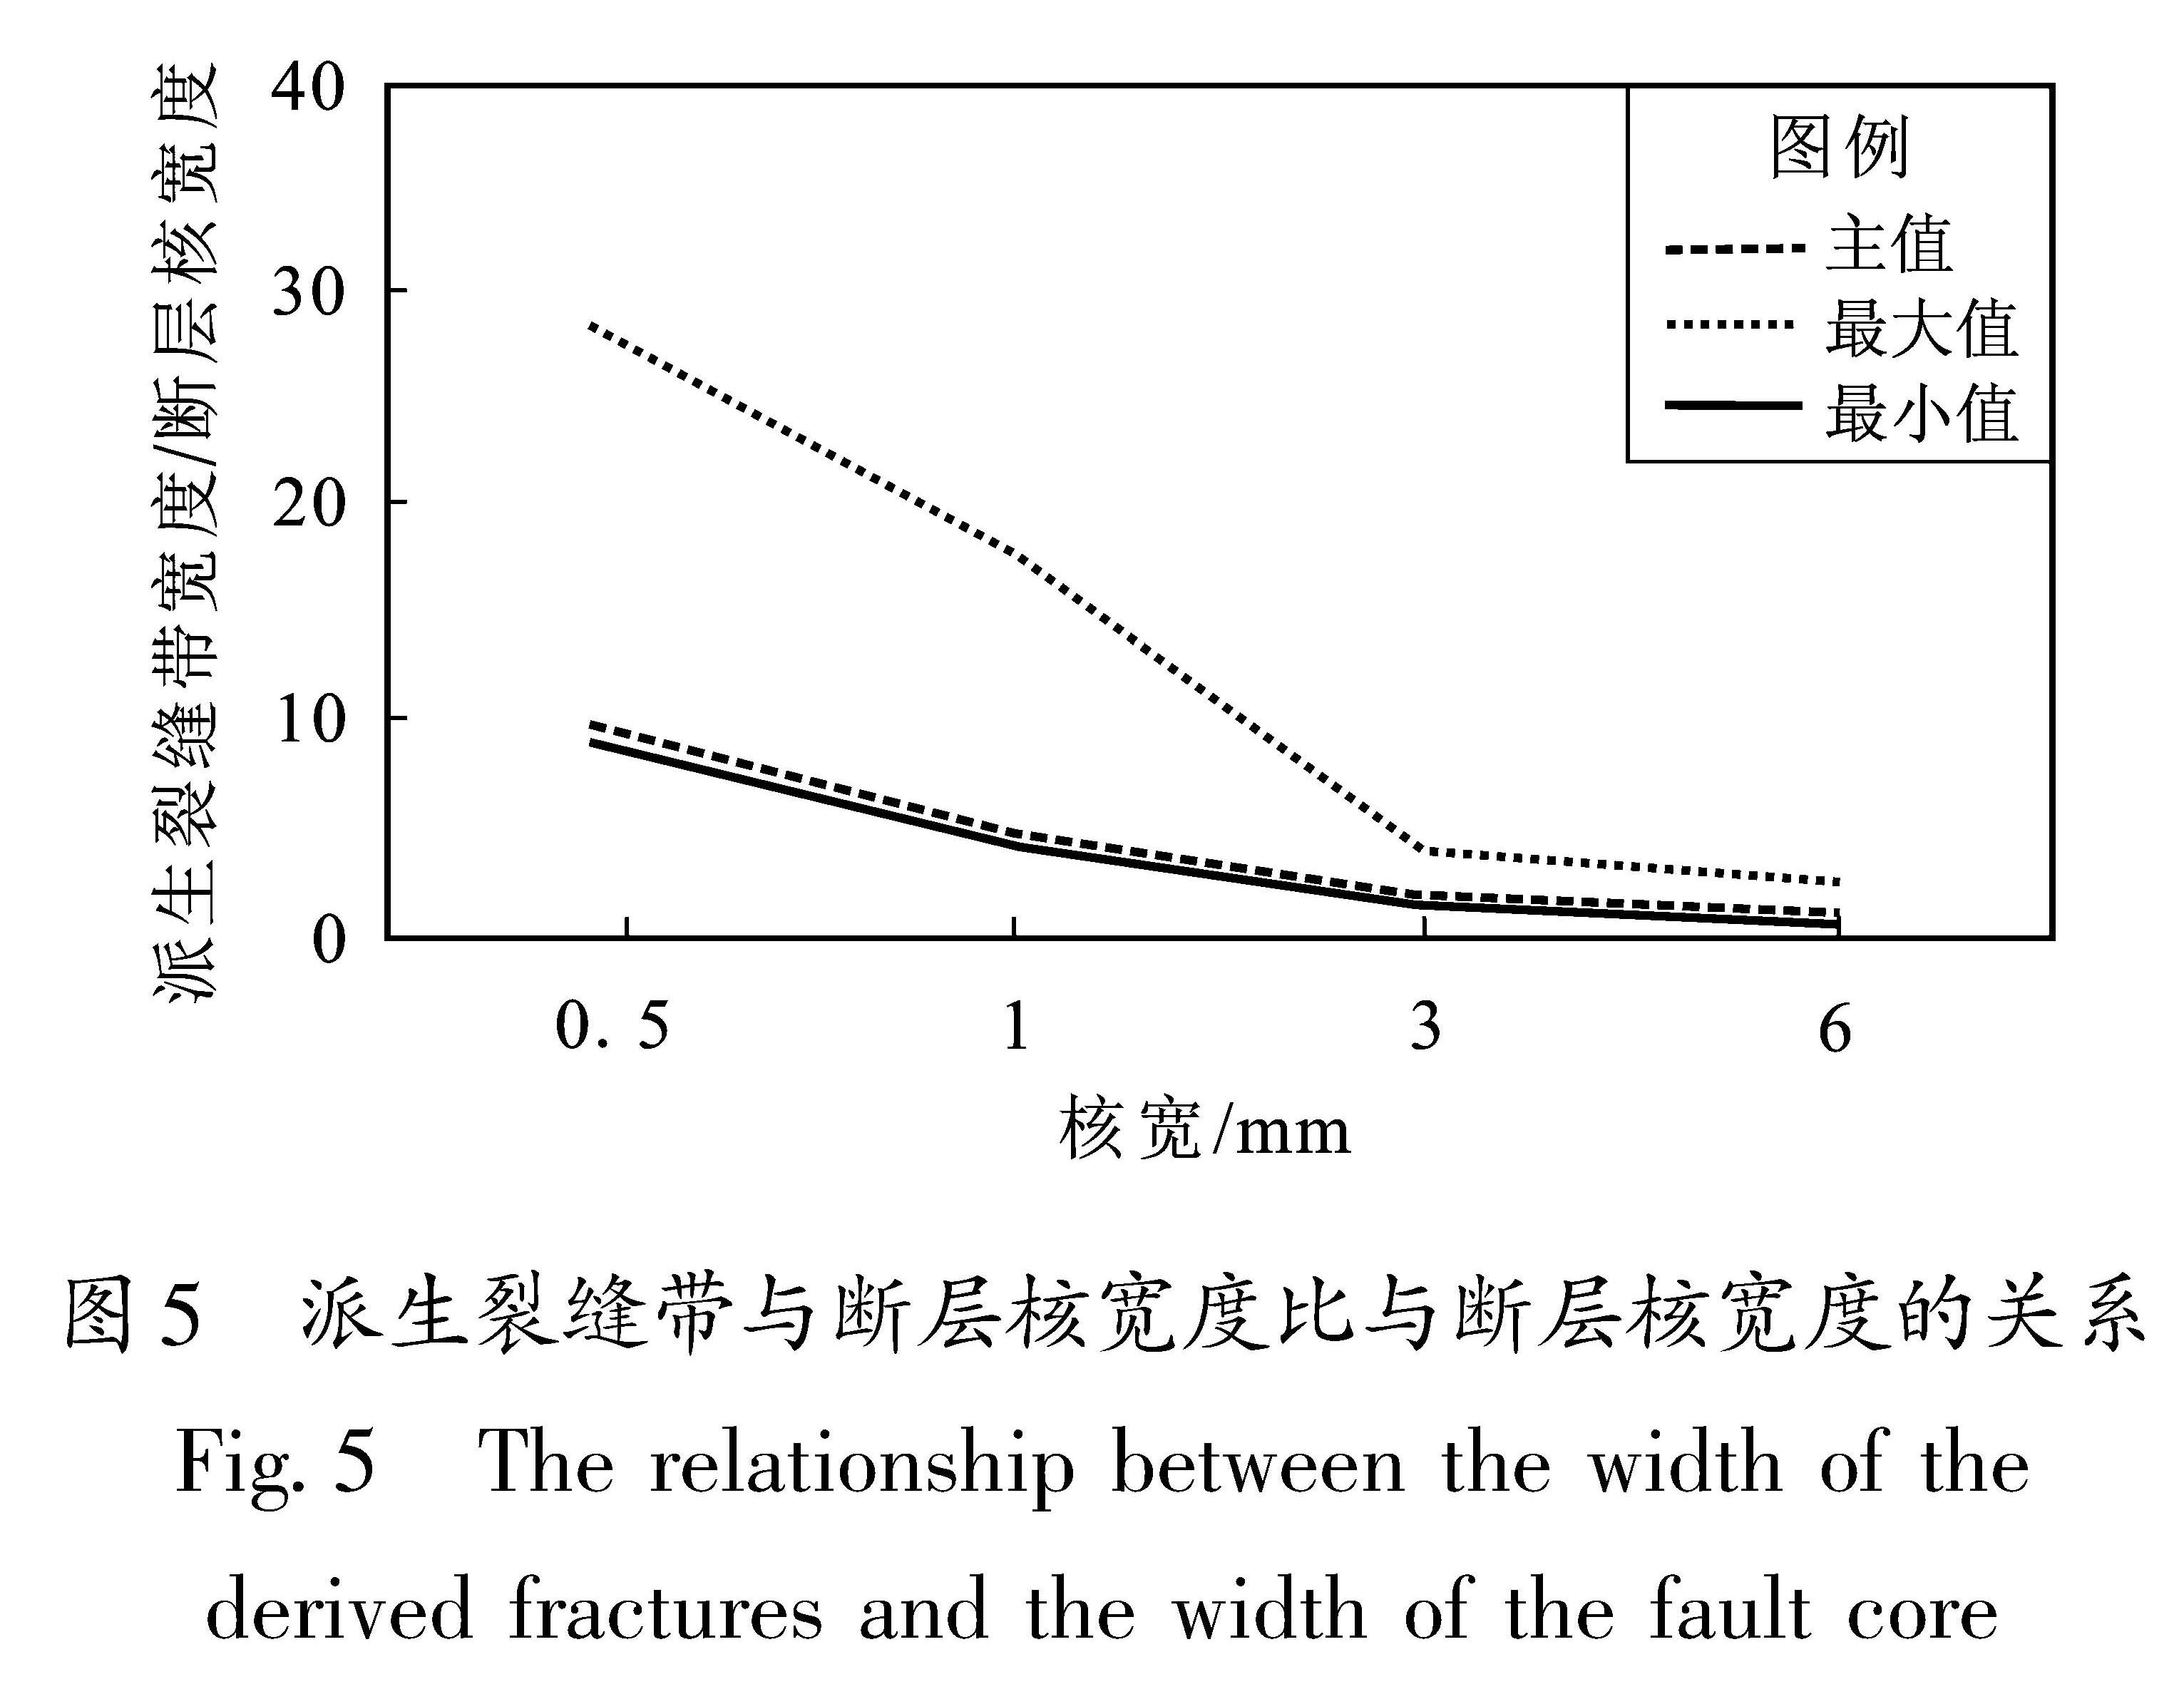 图5 派生裂缝带与断层核宽度比与断层核宽度的关系<br/>Fig.5 The relationship between the width of the derived fractures and the width of the fault core